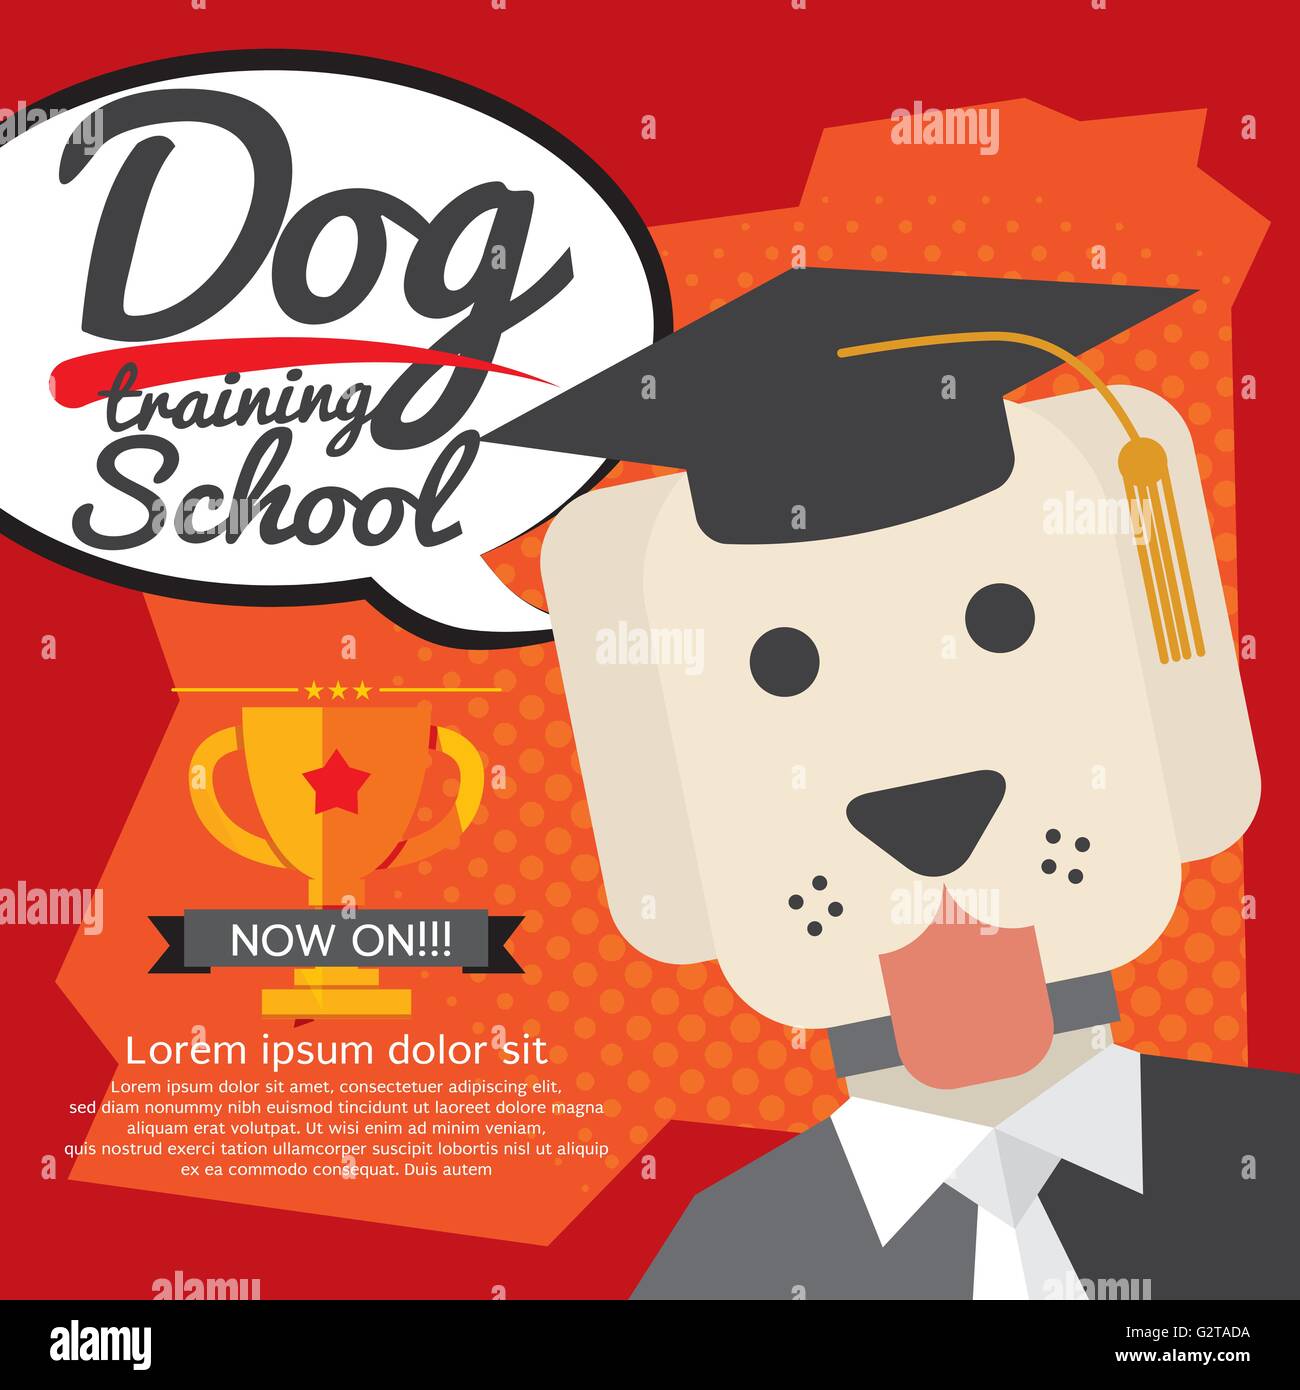 Dog Training School Vector Illustration Stock Vector